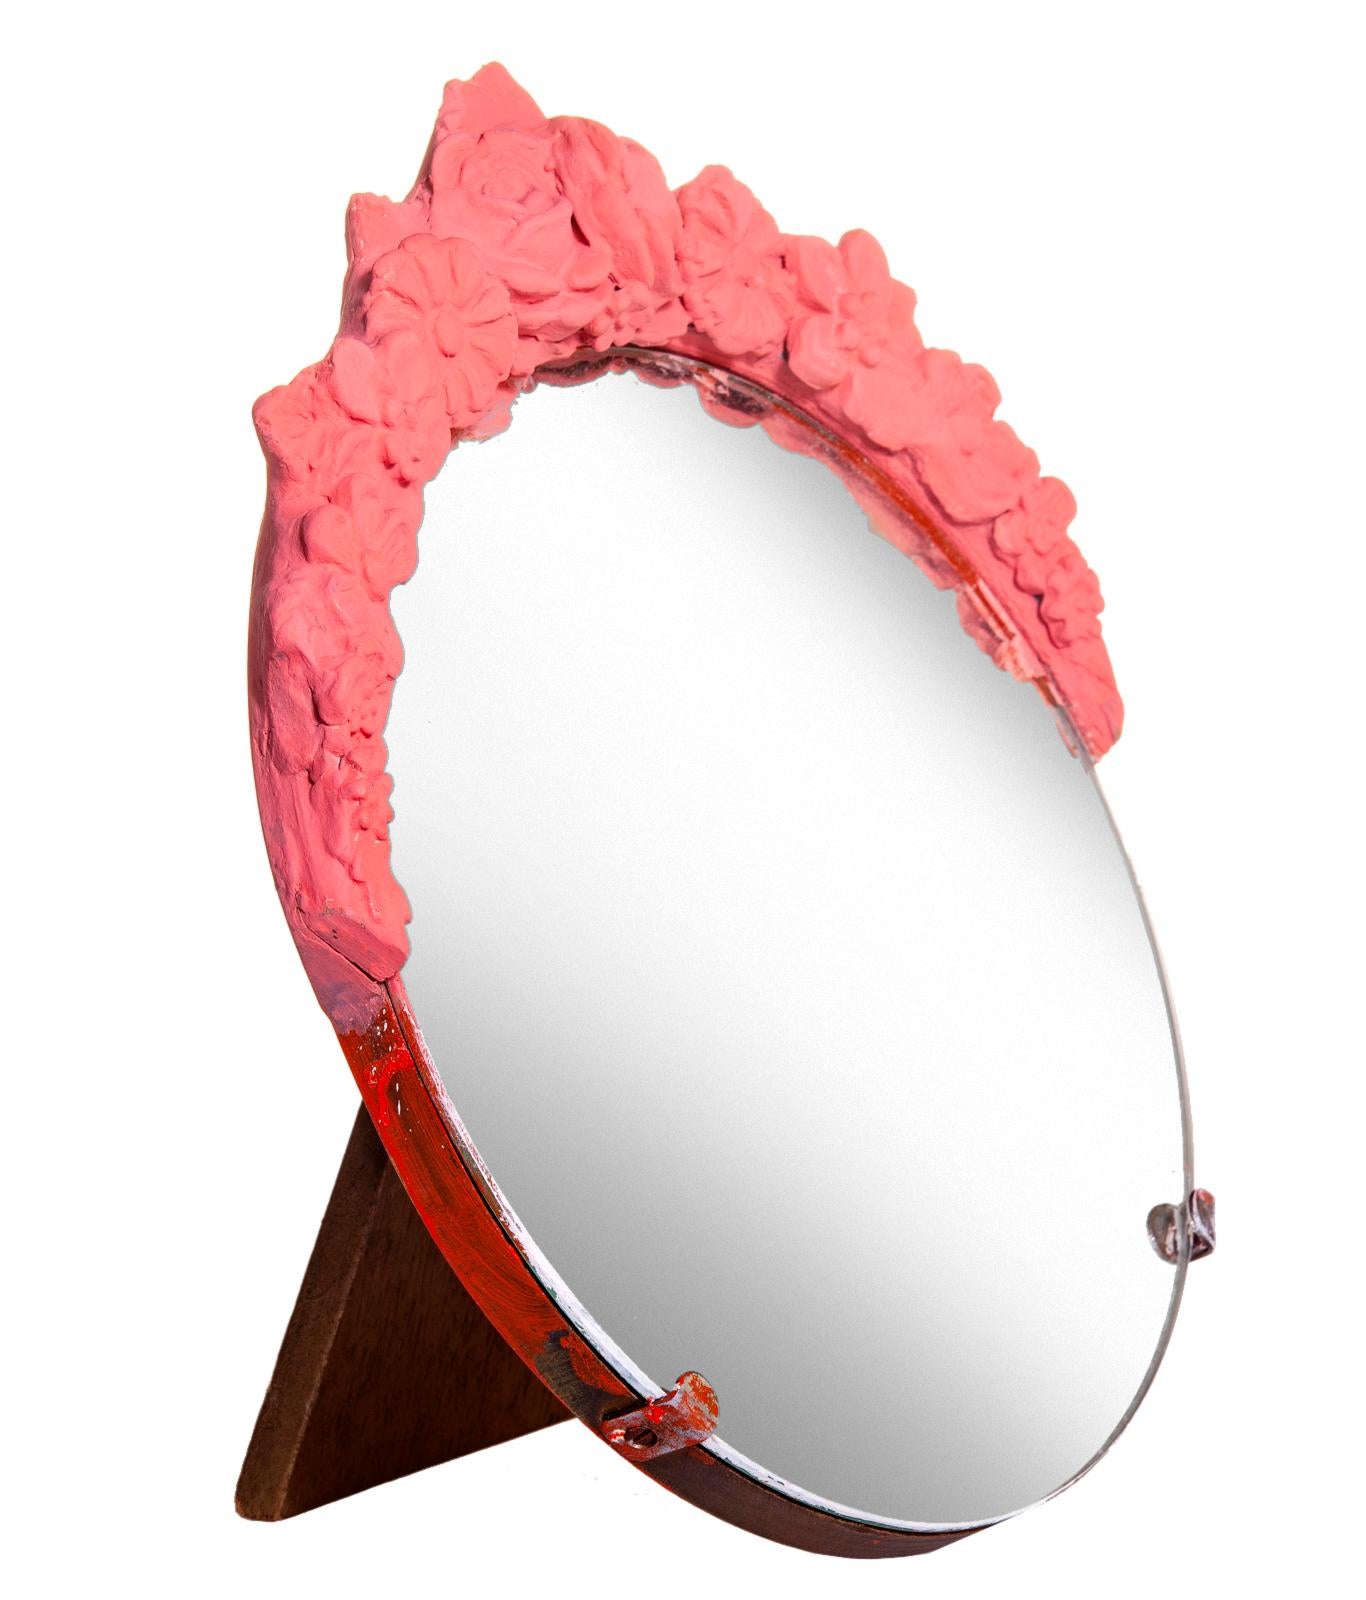 Très belle table de toilette ou miroir de vanité Barbola anglais ancien, avec dossier en bois dur. Circa 1920. Ce magnifique miroir est surmonté d'une crête florale qui a été restaurée et peinte à la main en rouge pastèque.